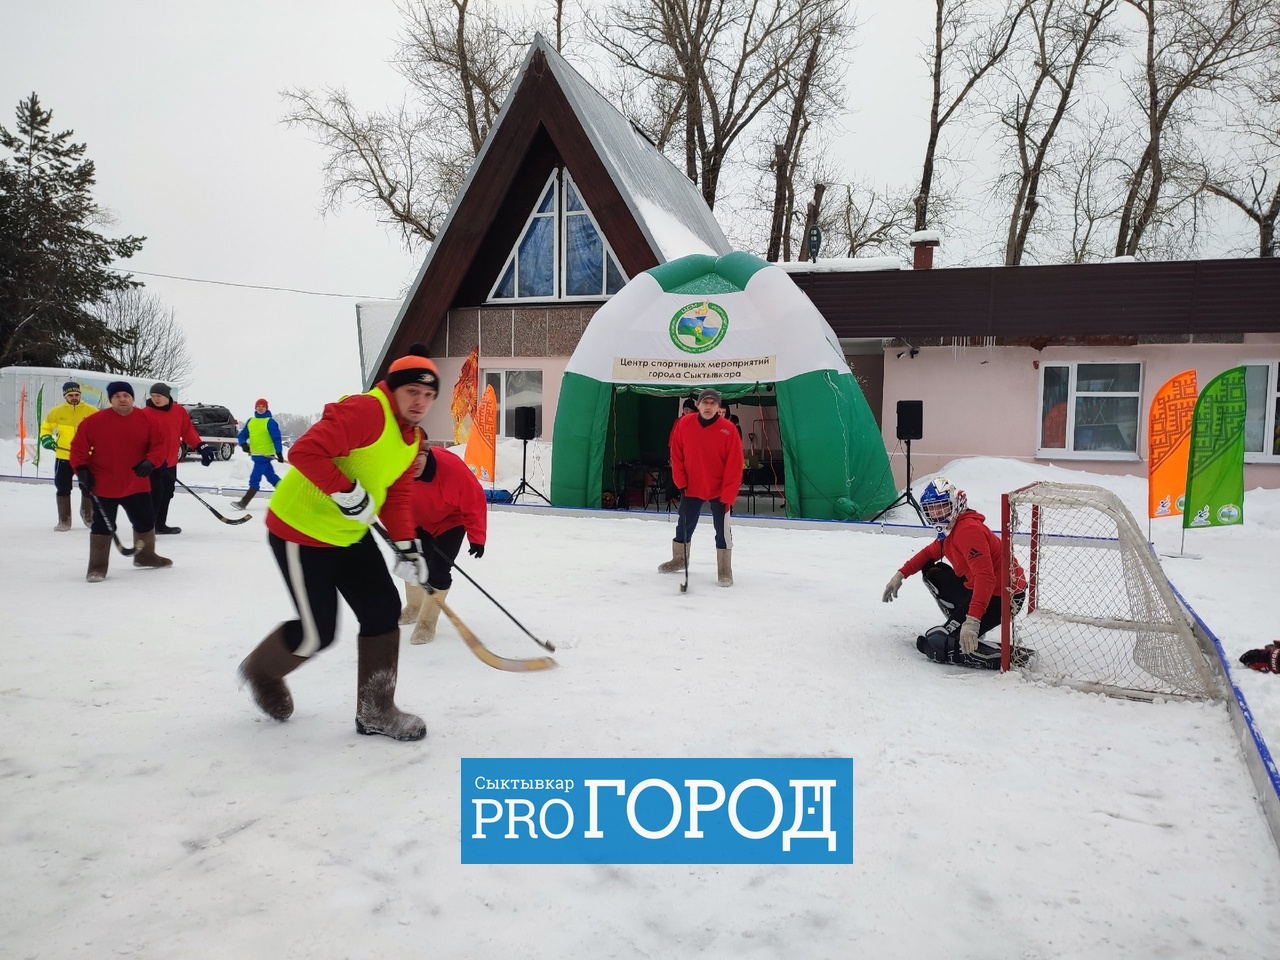 "Мячом в лицо попало": в Сыктывкаре прошел хоккей на валенках